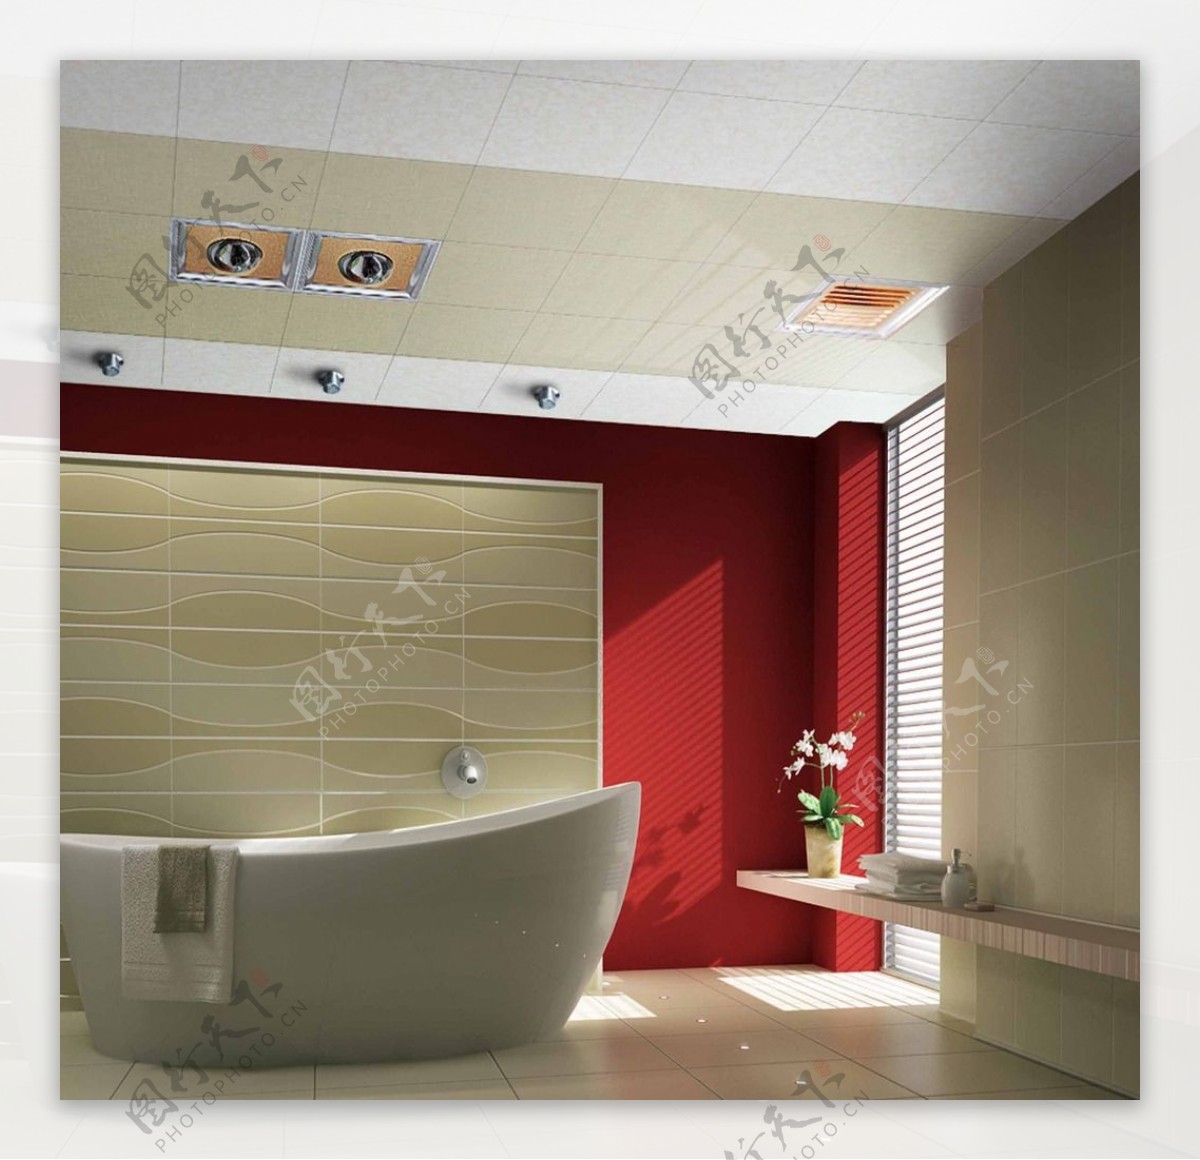 浴室吊顶效果图图片